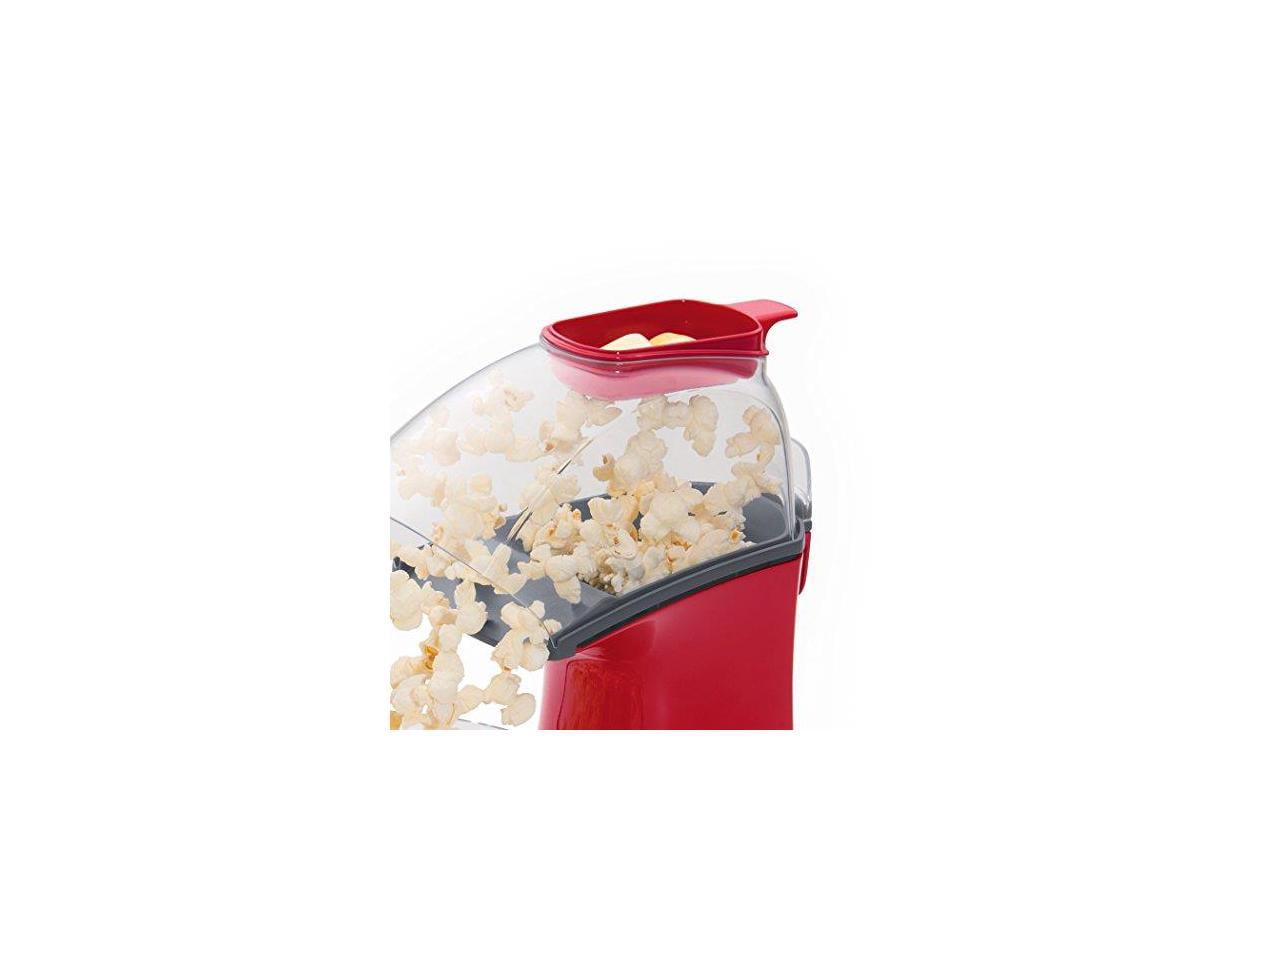 J-JATI Air Pop Popcorn Maker – JJati